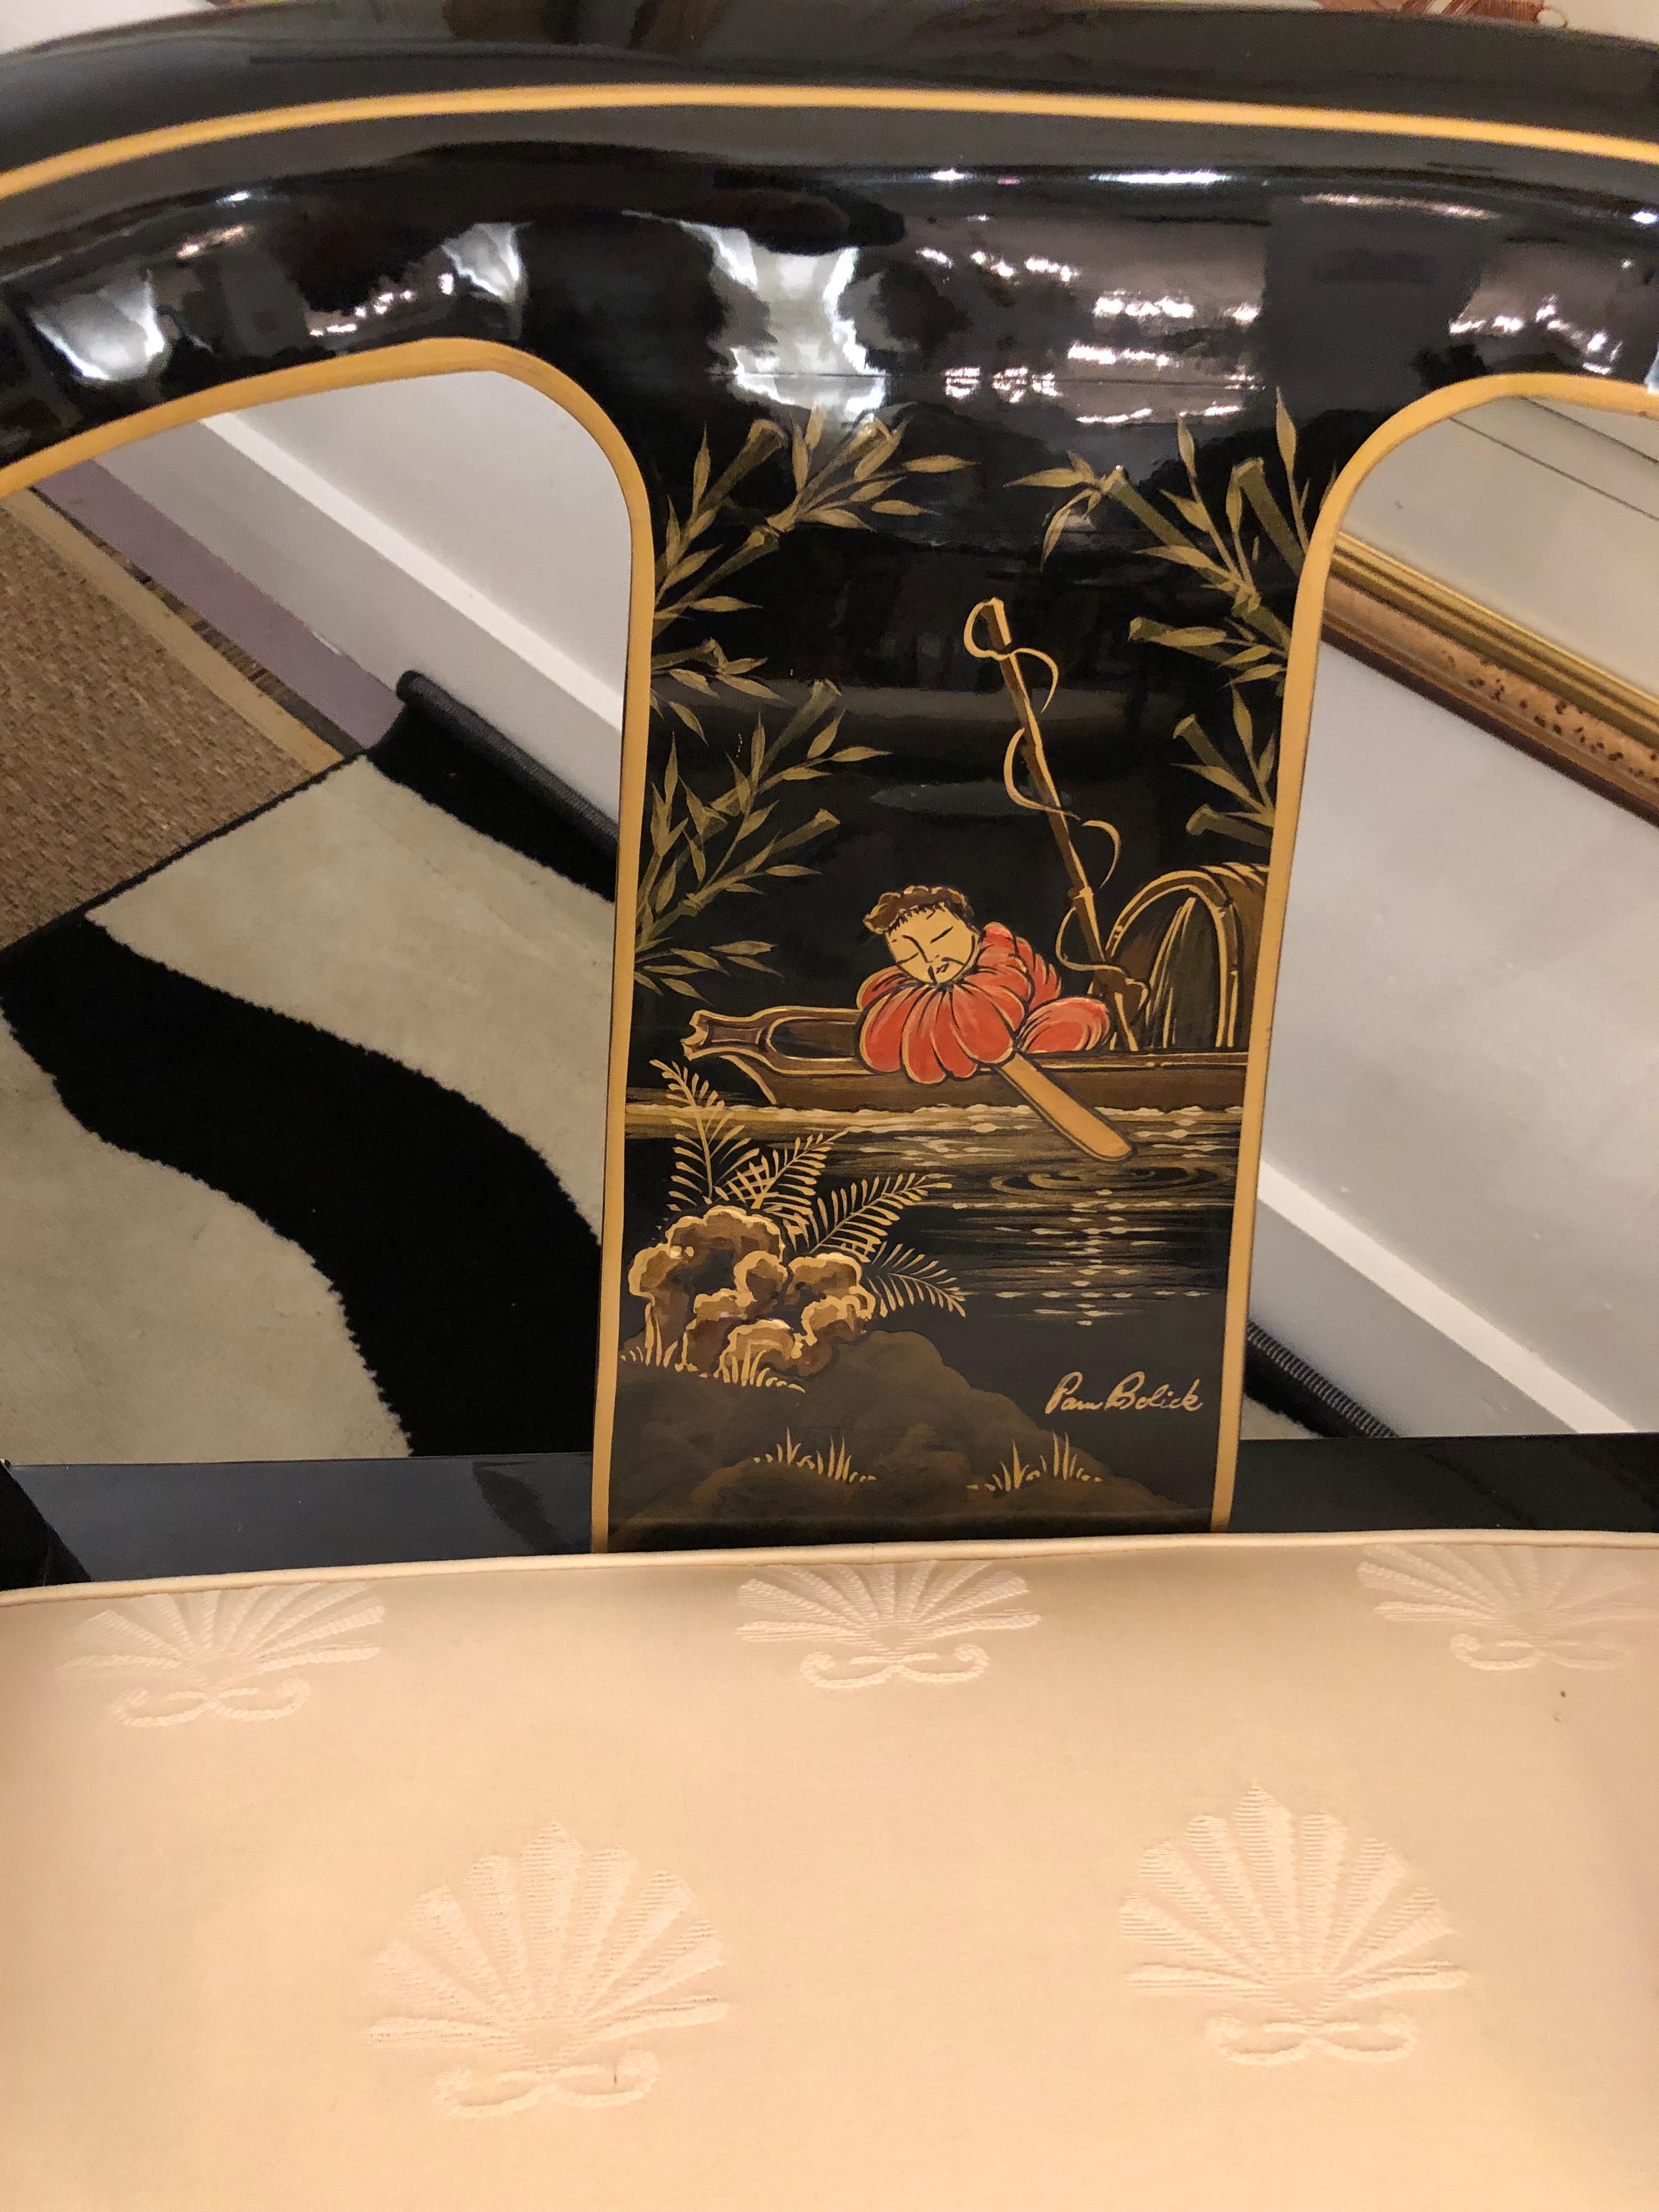 Sensationnelle paire de fauteuils club sculpturaux en forme de fer à cheval de style James Mont, assortis et vendus séparément. Laque noire brillante avec détails en laiton et décorations asiatiques en rouge et or. Les sièges sont en damas